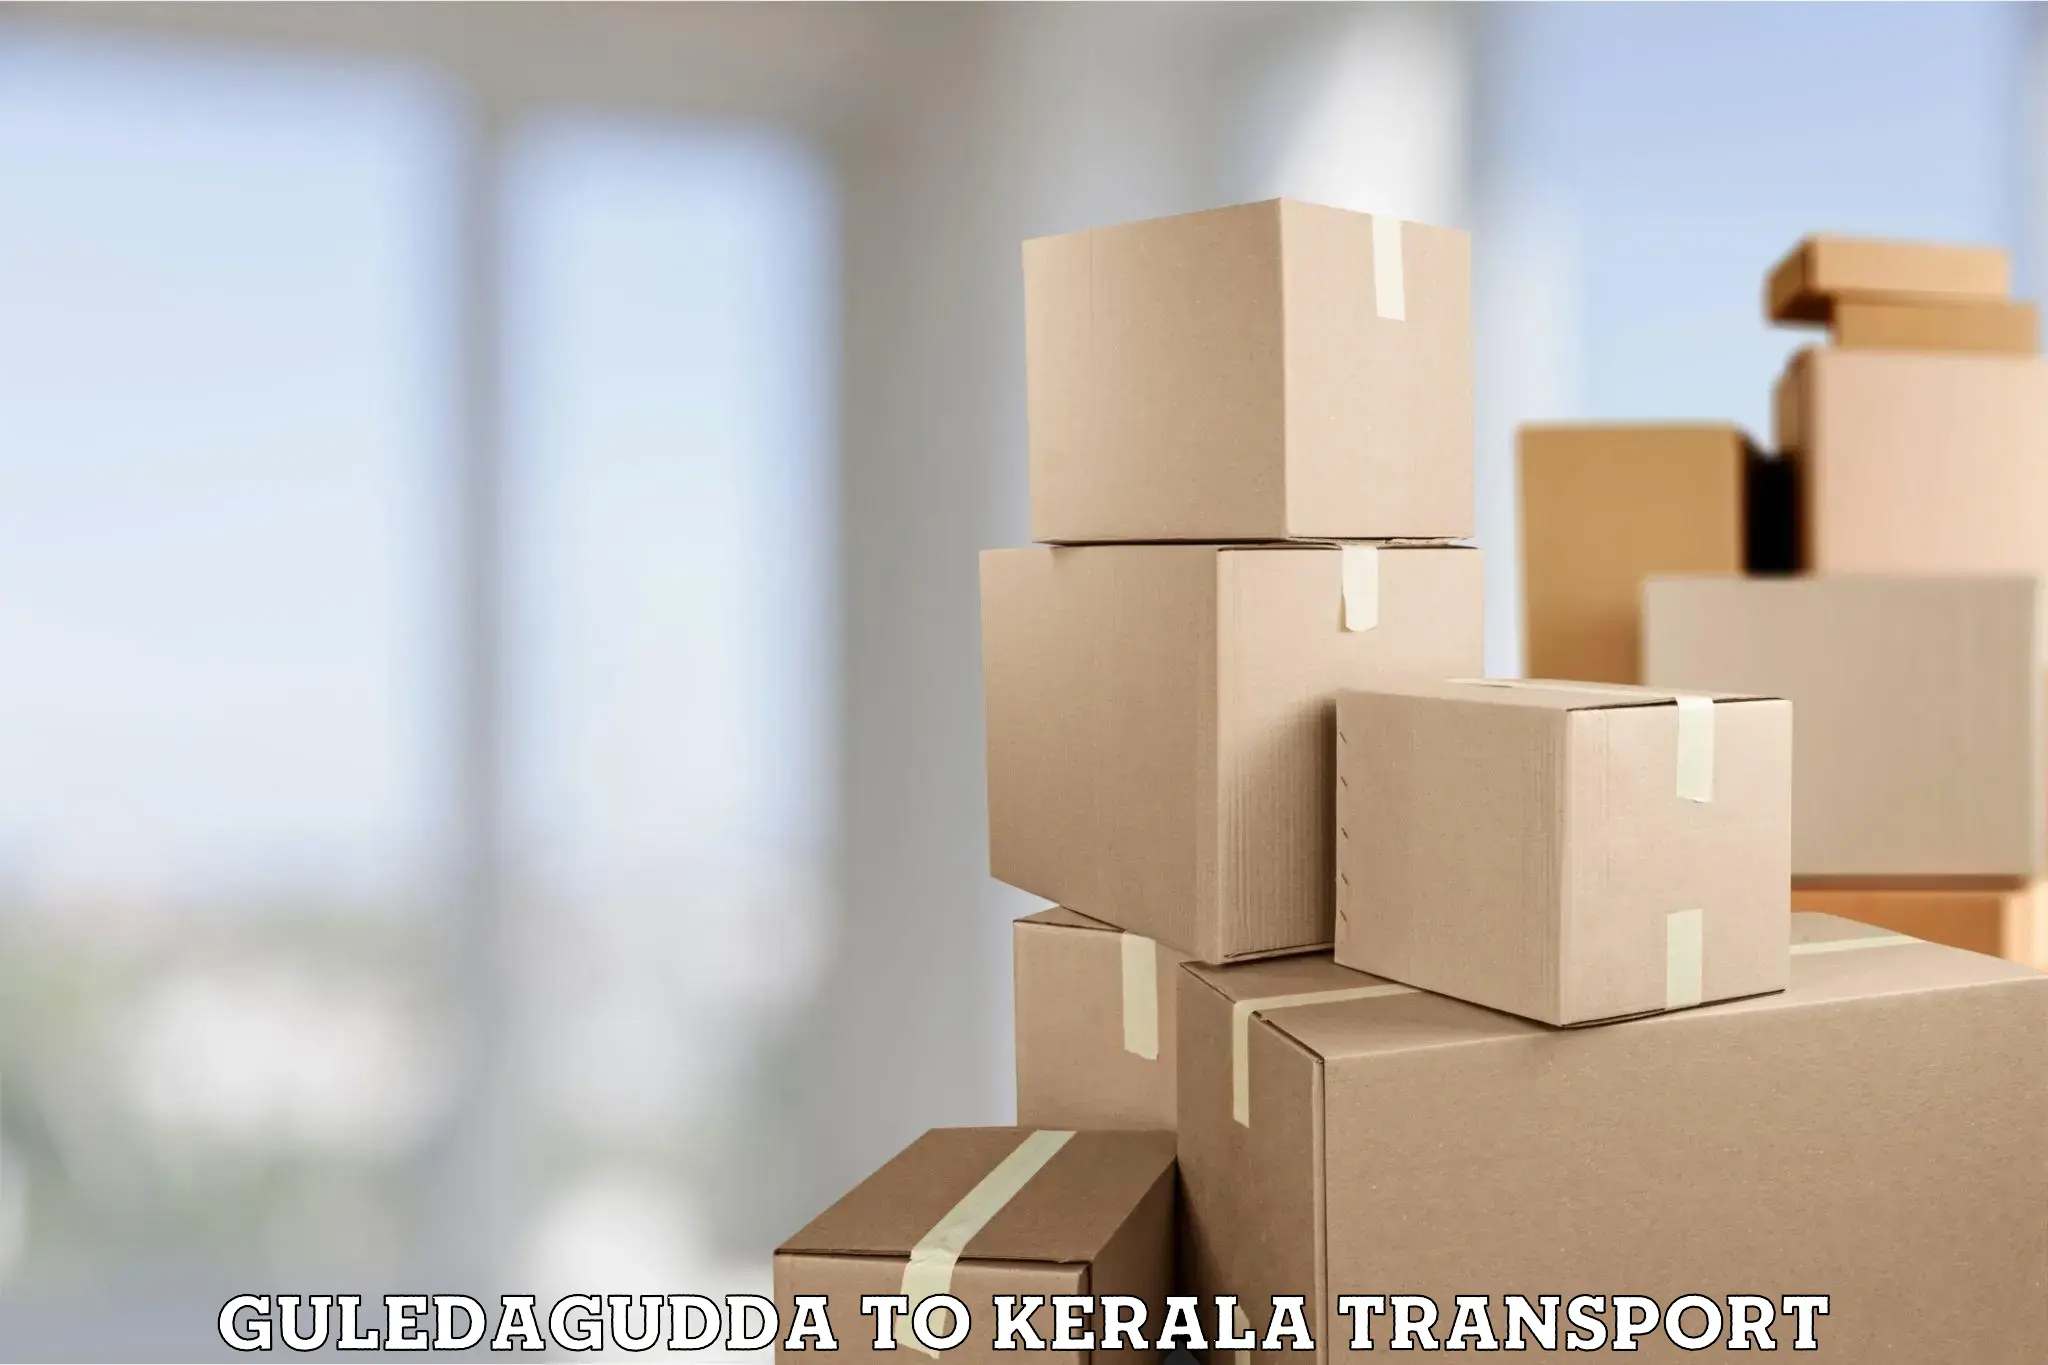 Air cargo transport services Guledagudda to Trivandrum